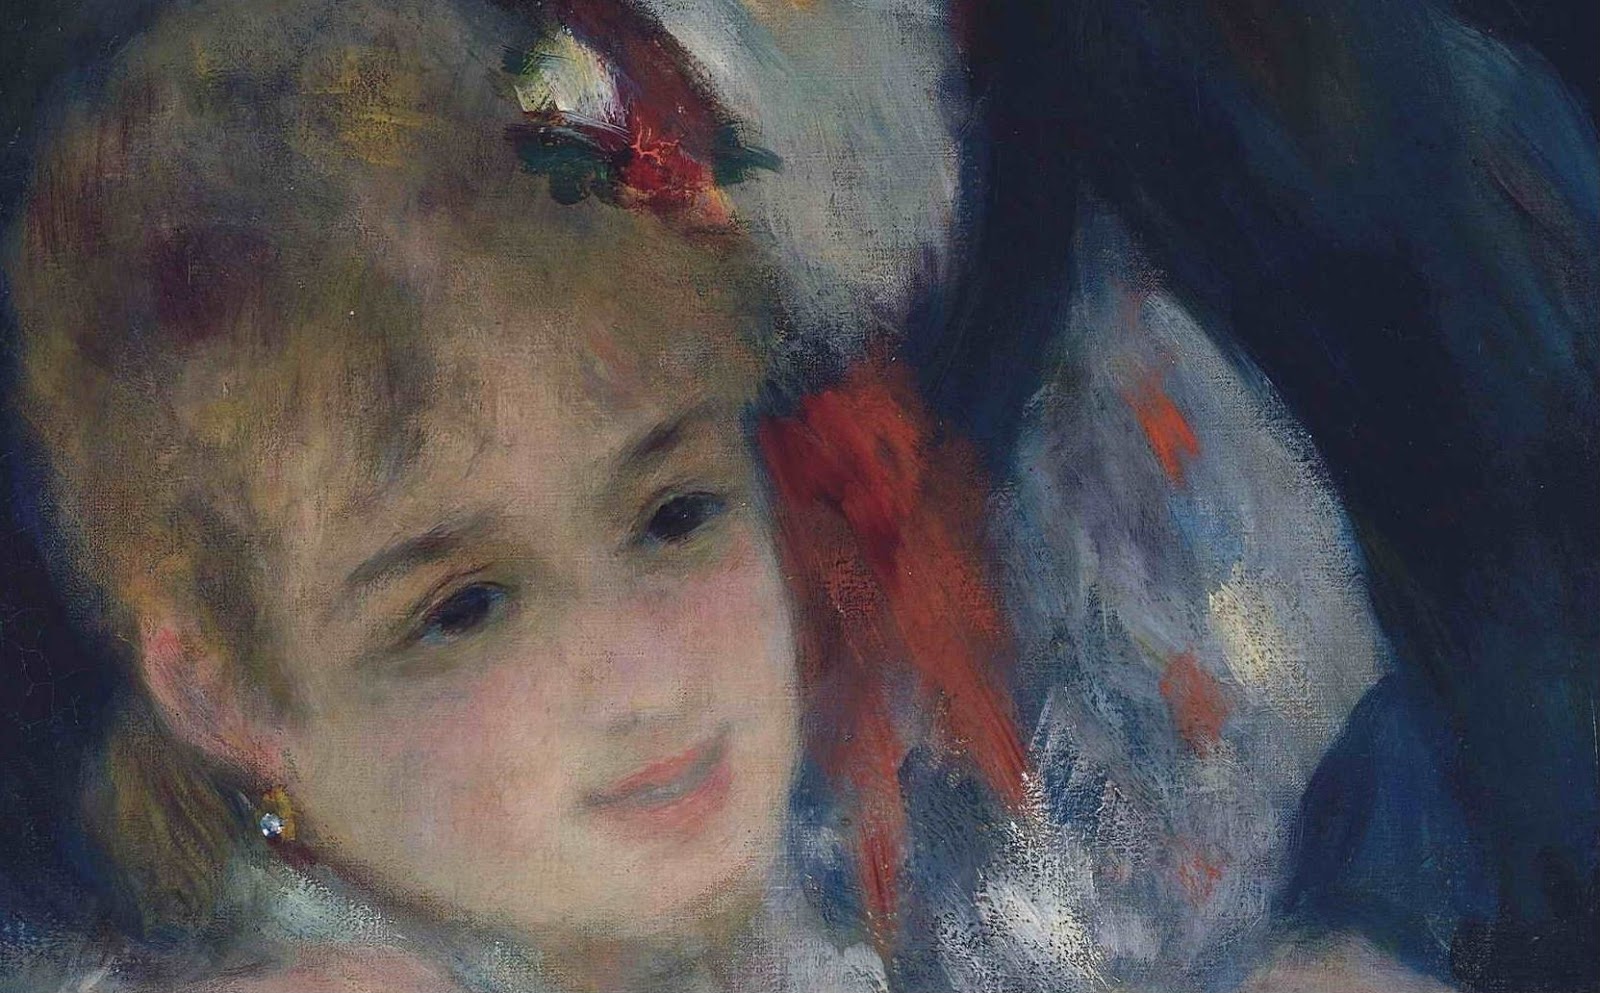 Pierre+Auguste+Renoir-1841-1-19 (428).JPG